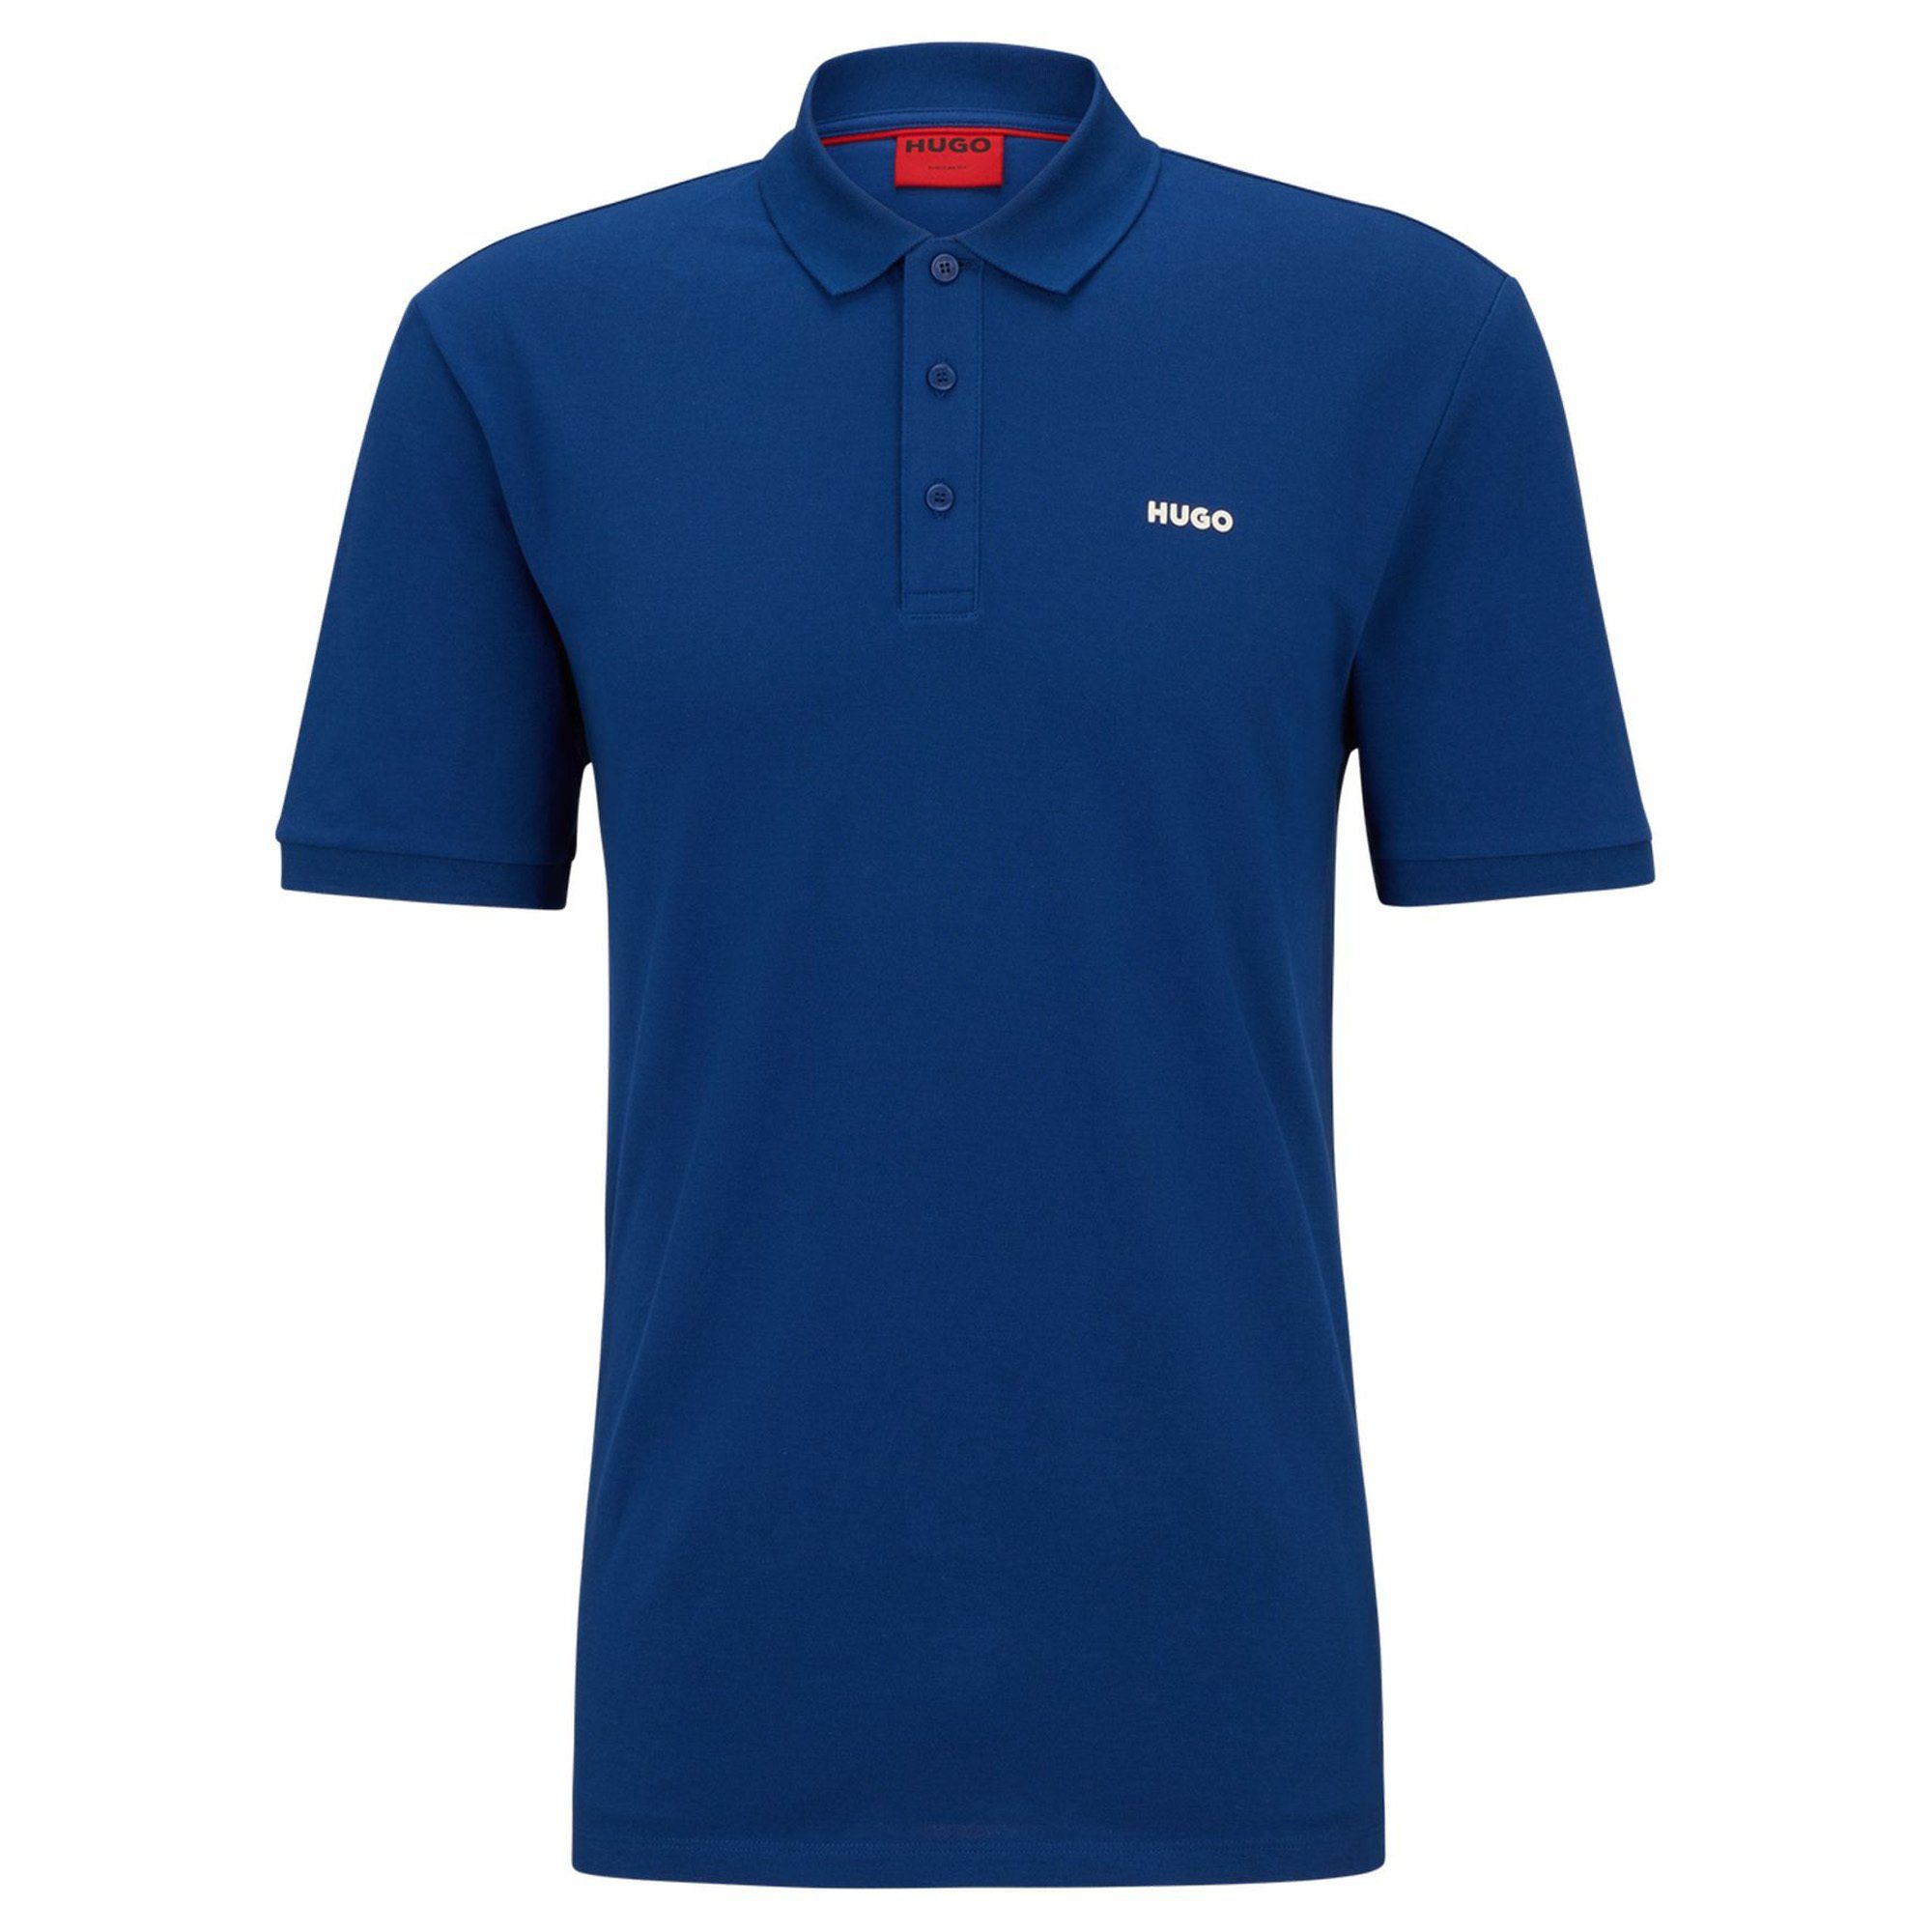 HUGO Poloshirt Herren Polo-Shirt 1/2-Arm (Navy) Blau Pique, - DONOS222